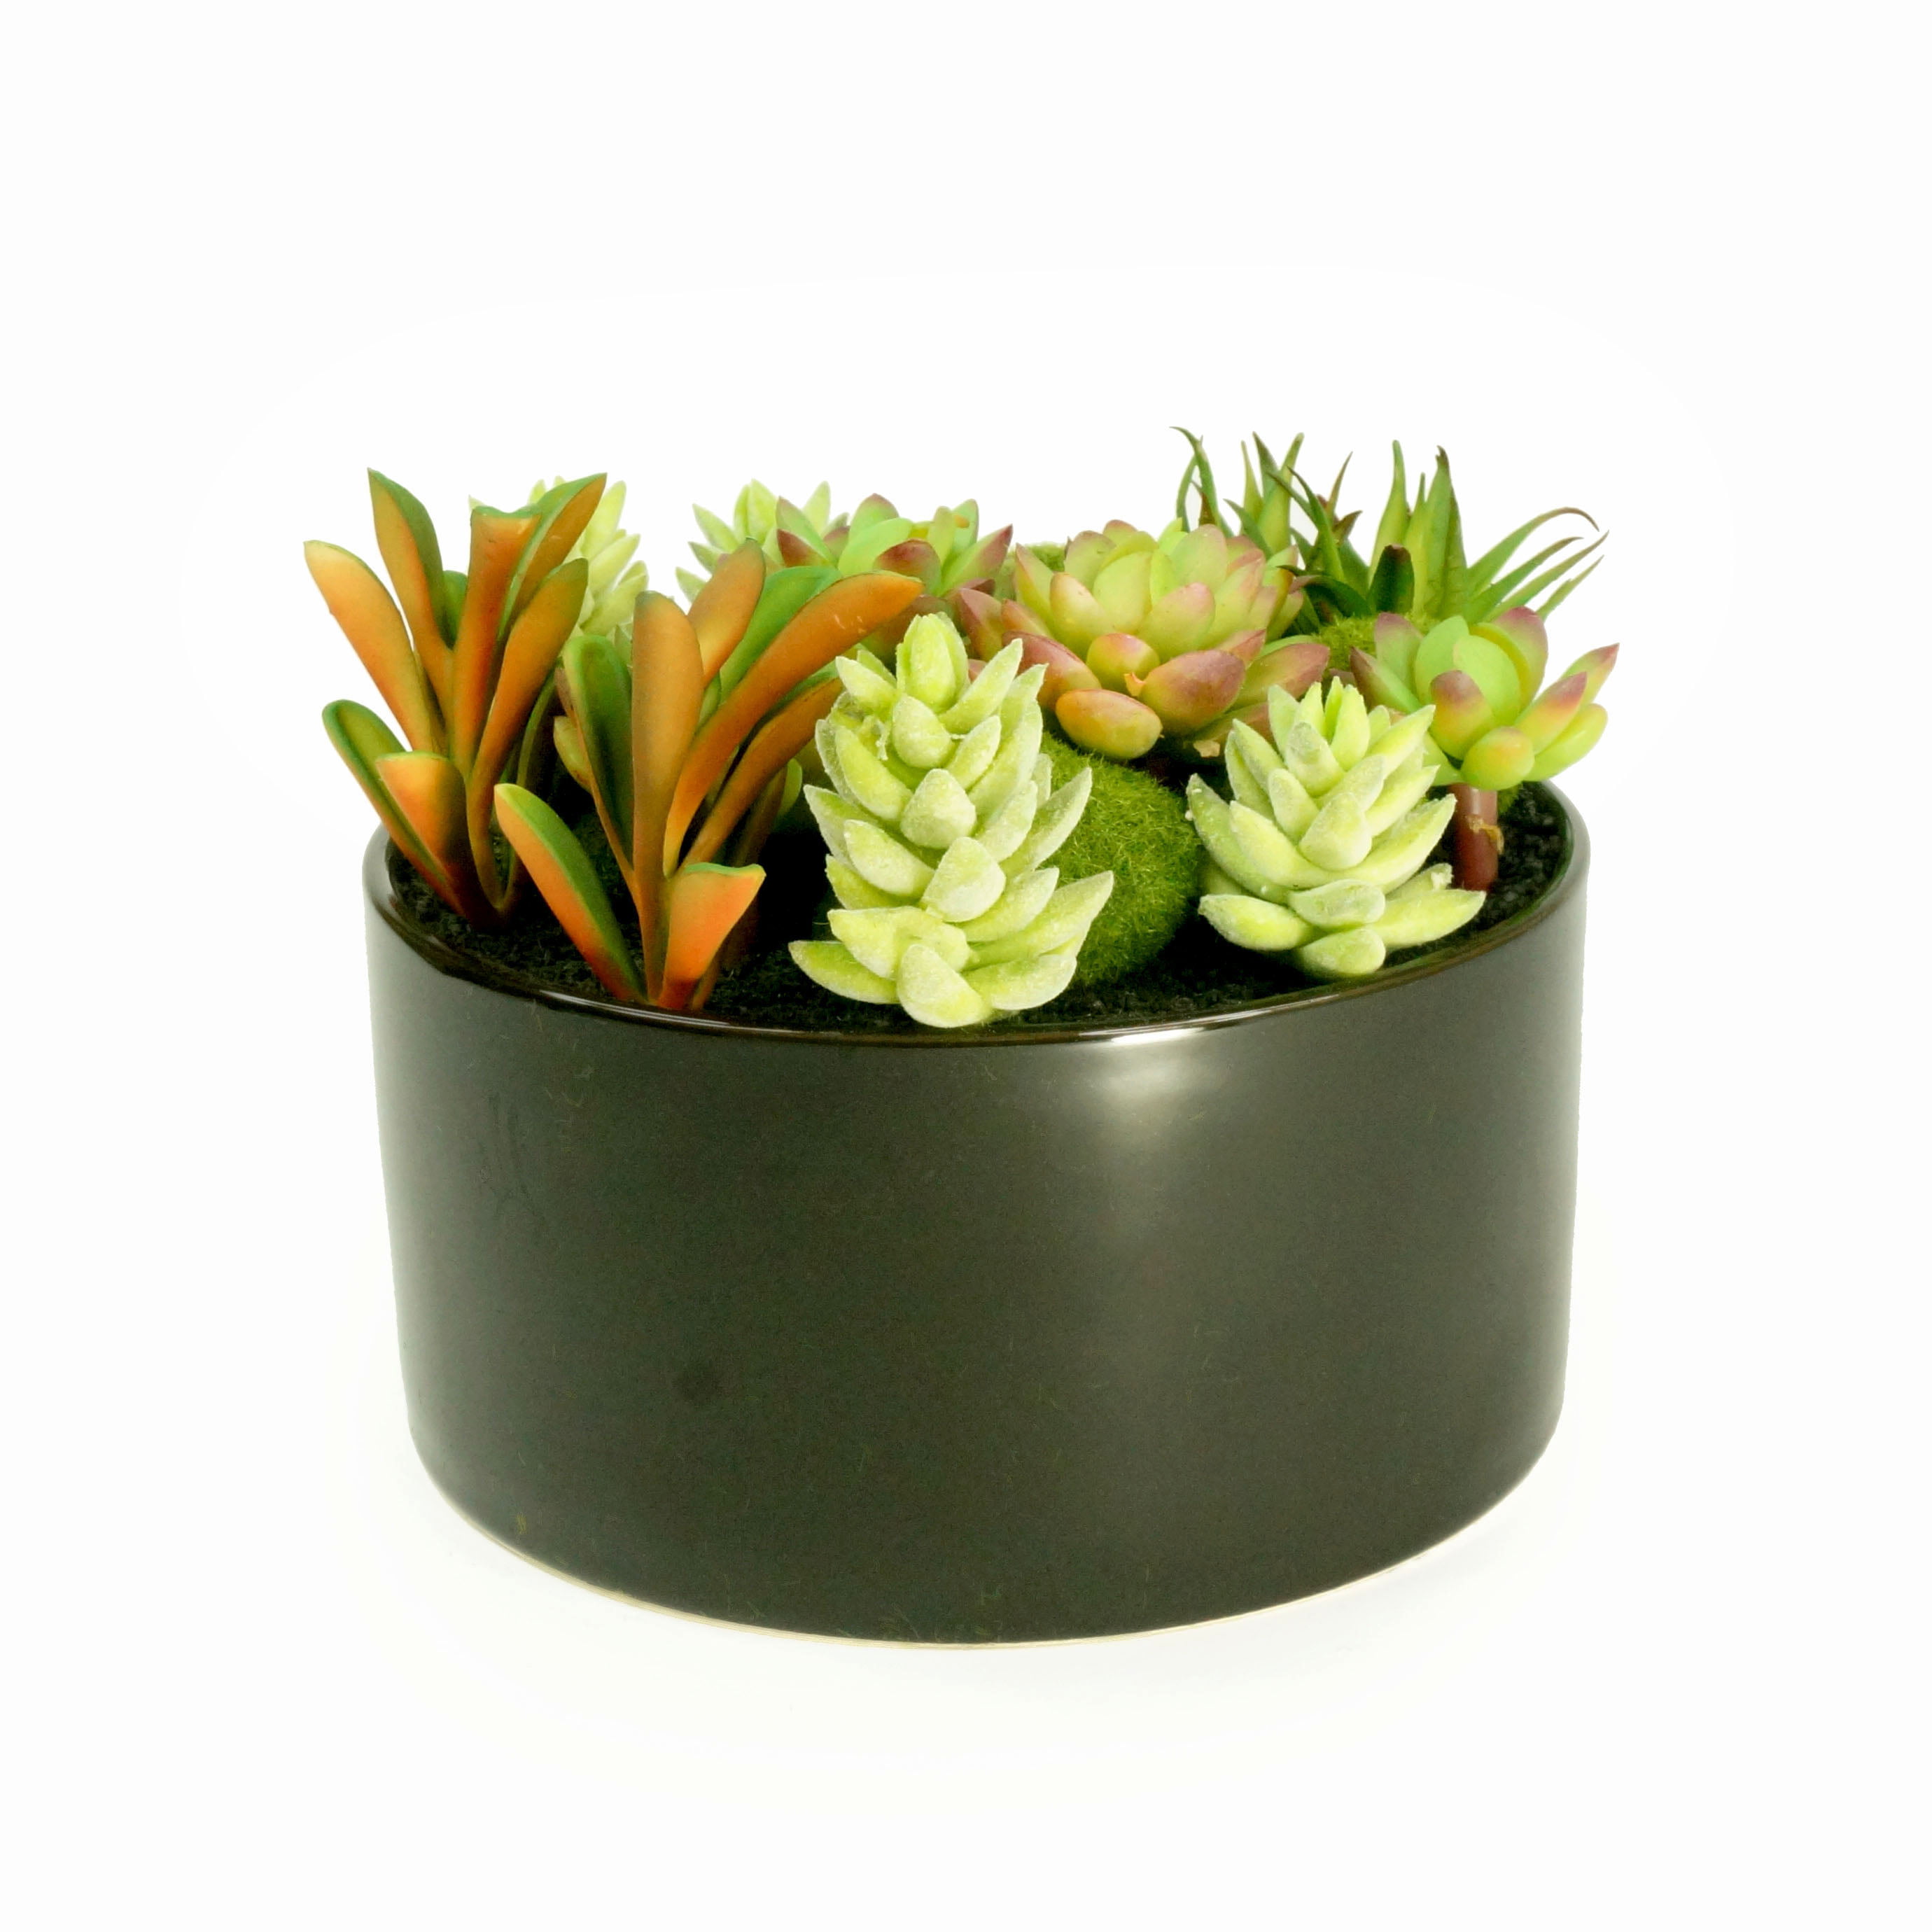 Solid Color Plastic Flower Pot Succulents Plant Bonsai Decor Planter Container 